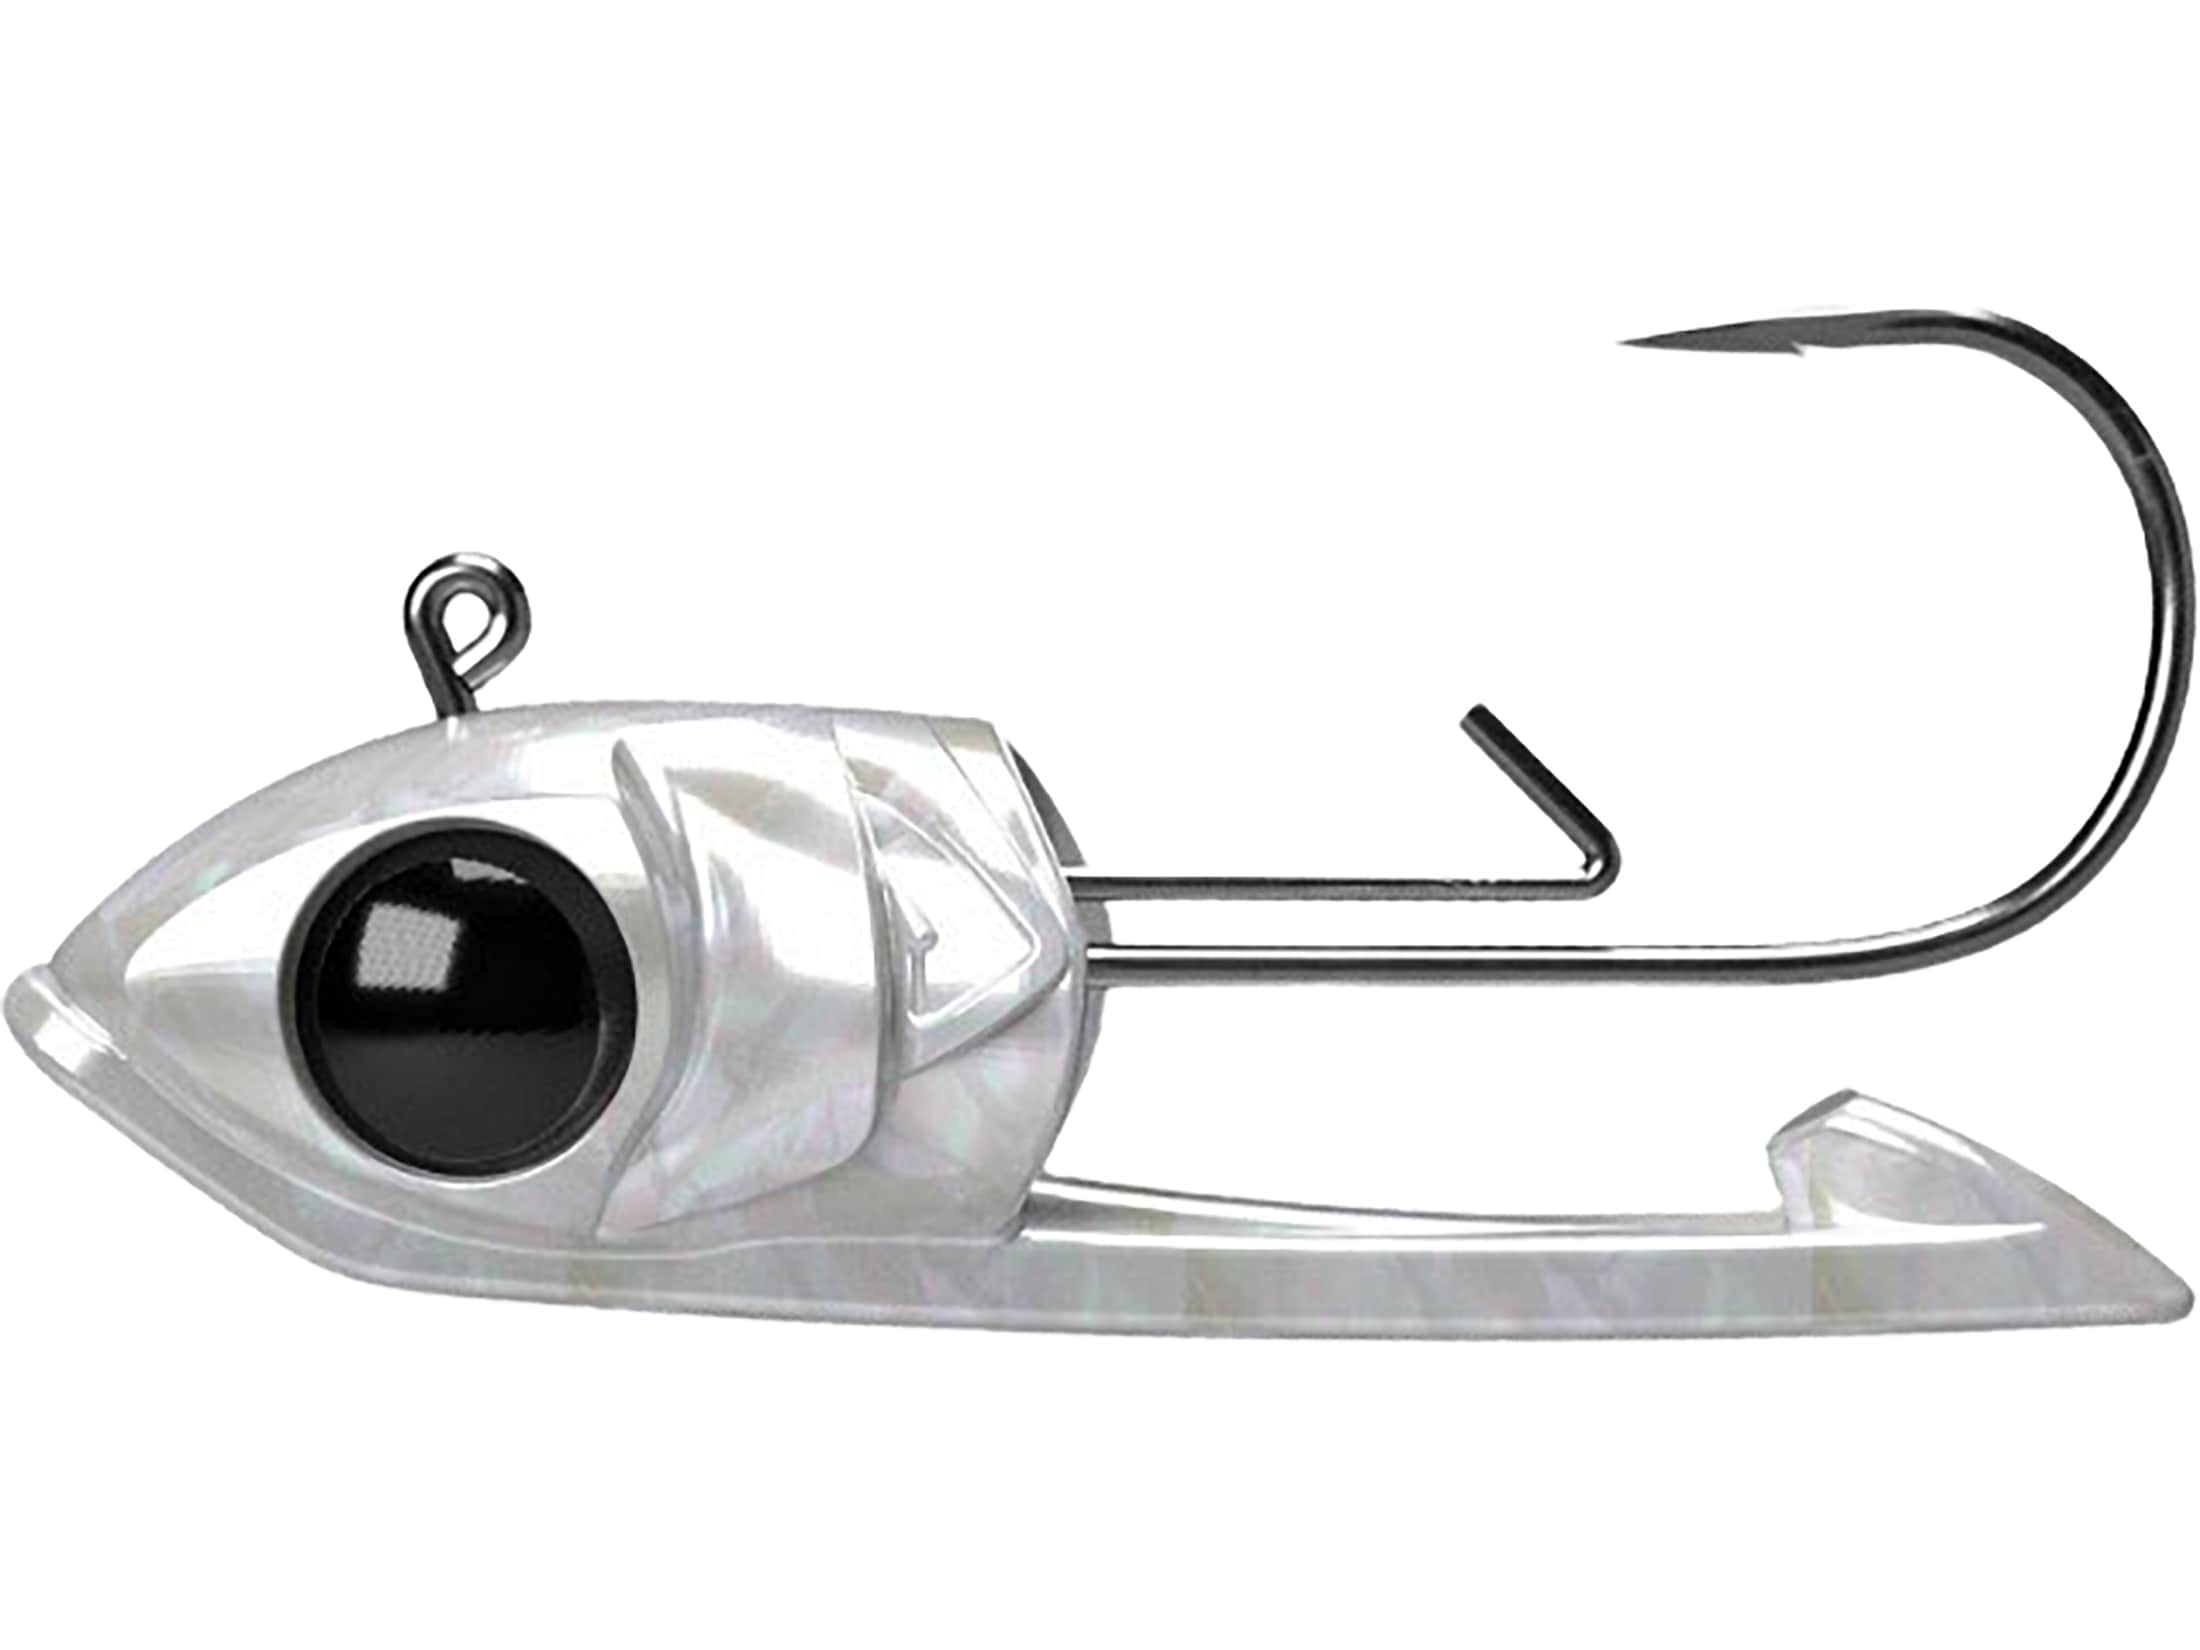 Buckeye Lures Spot Remover Pro Model Jig Heads- 5 Pack - Angler's